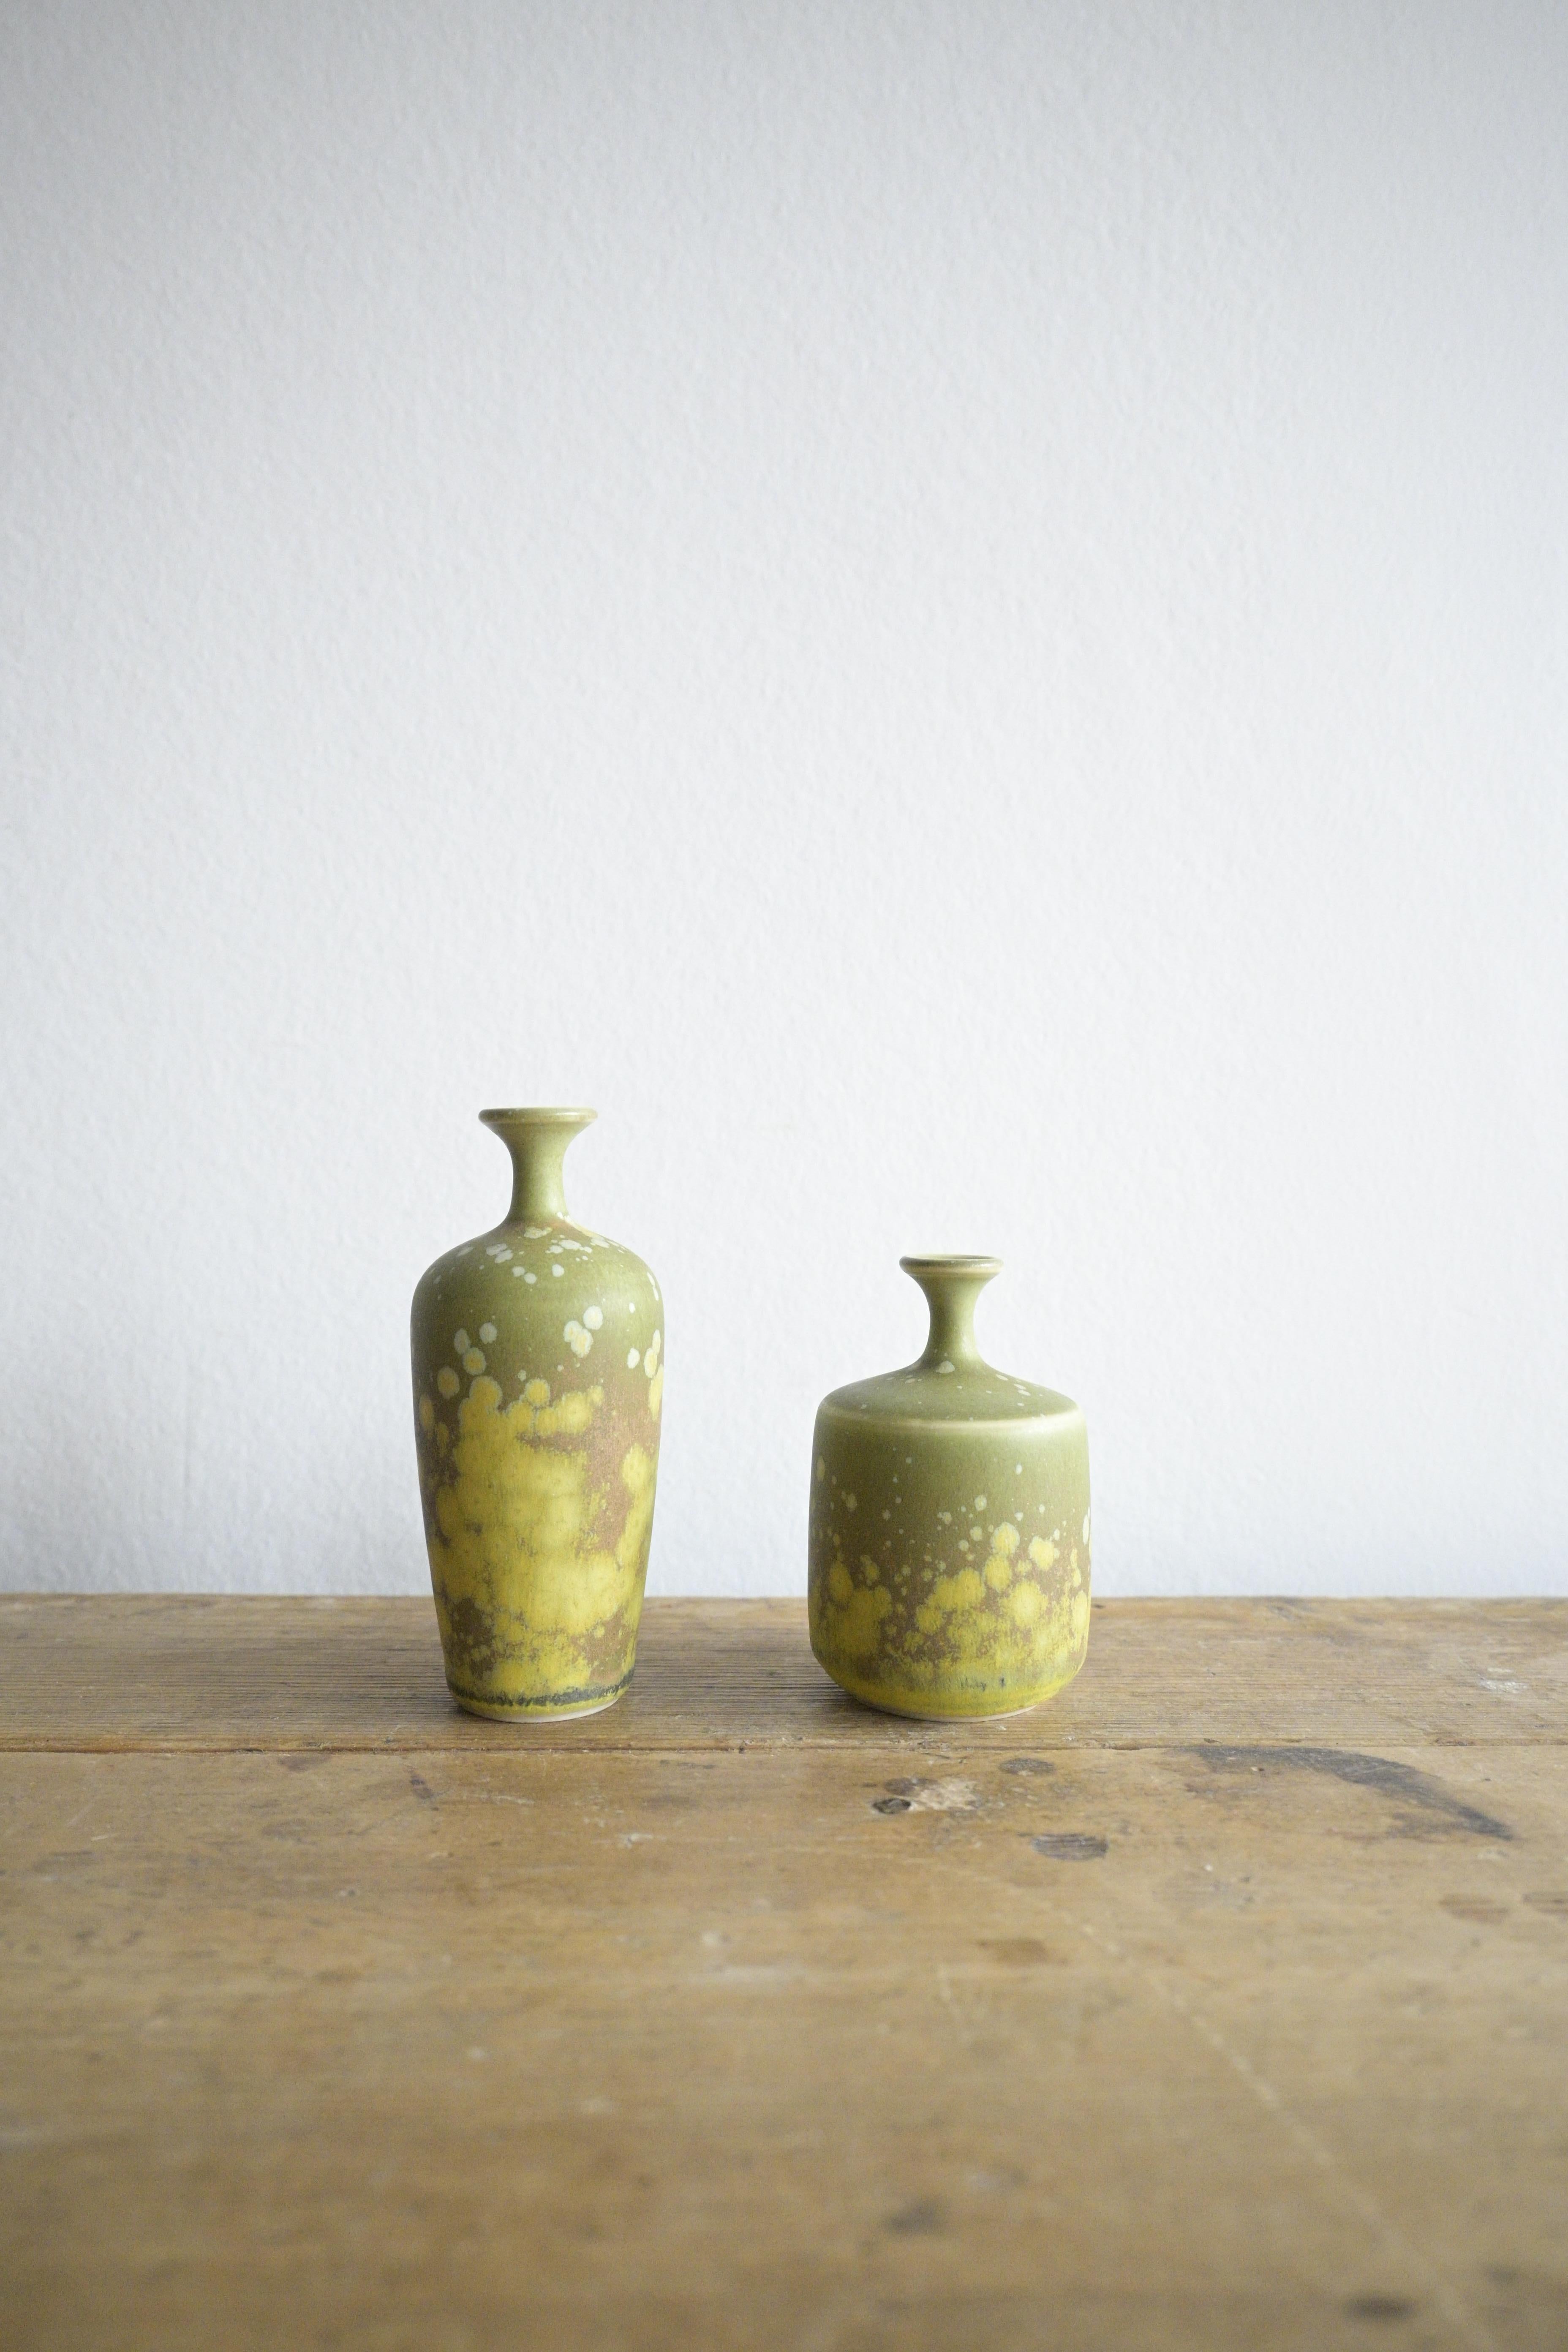 Un ensemble de deux petits vases de Rolf Palm, Suède, 1960

Deux magnifiques petits vases à la glaçure multicolore conçus par Rolf Palm, fabriqués dans son atelier de Mölle, près de Höganäs, en Suède.

Rolf Palm était l'un des principaux céramistes